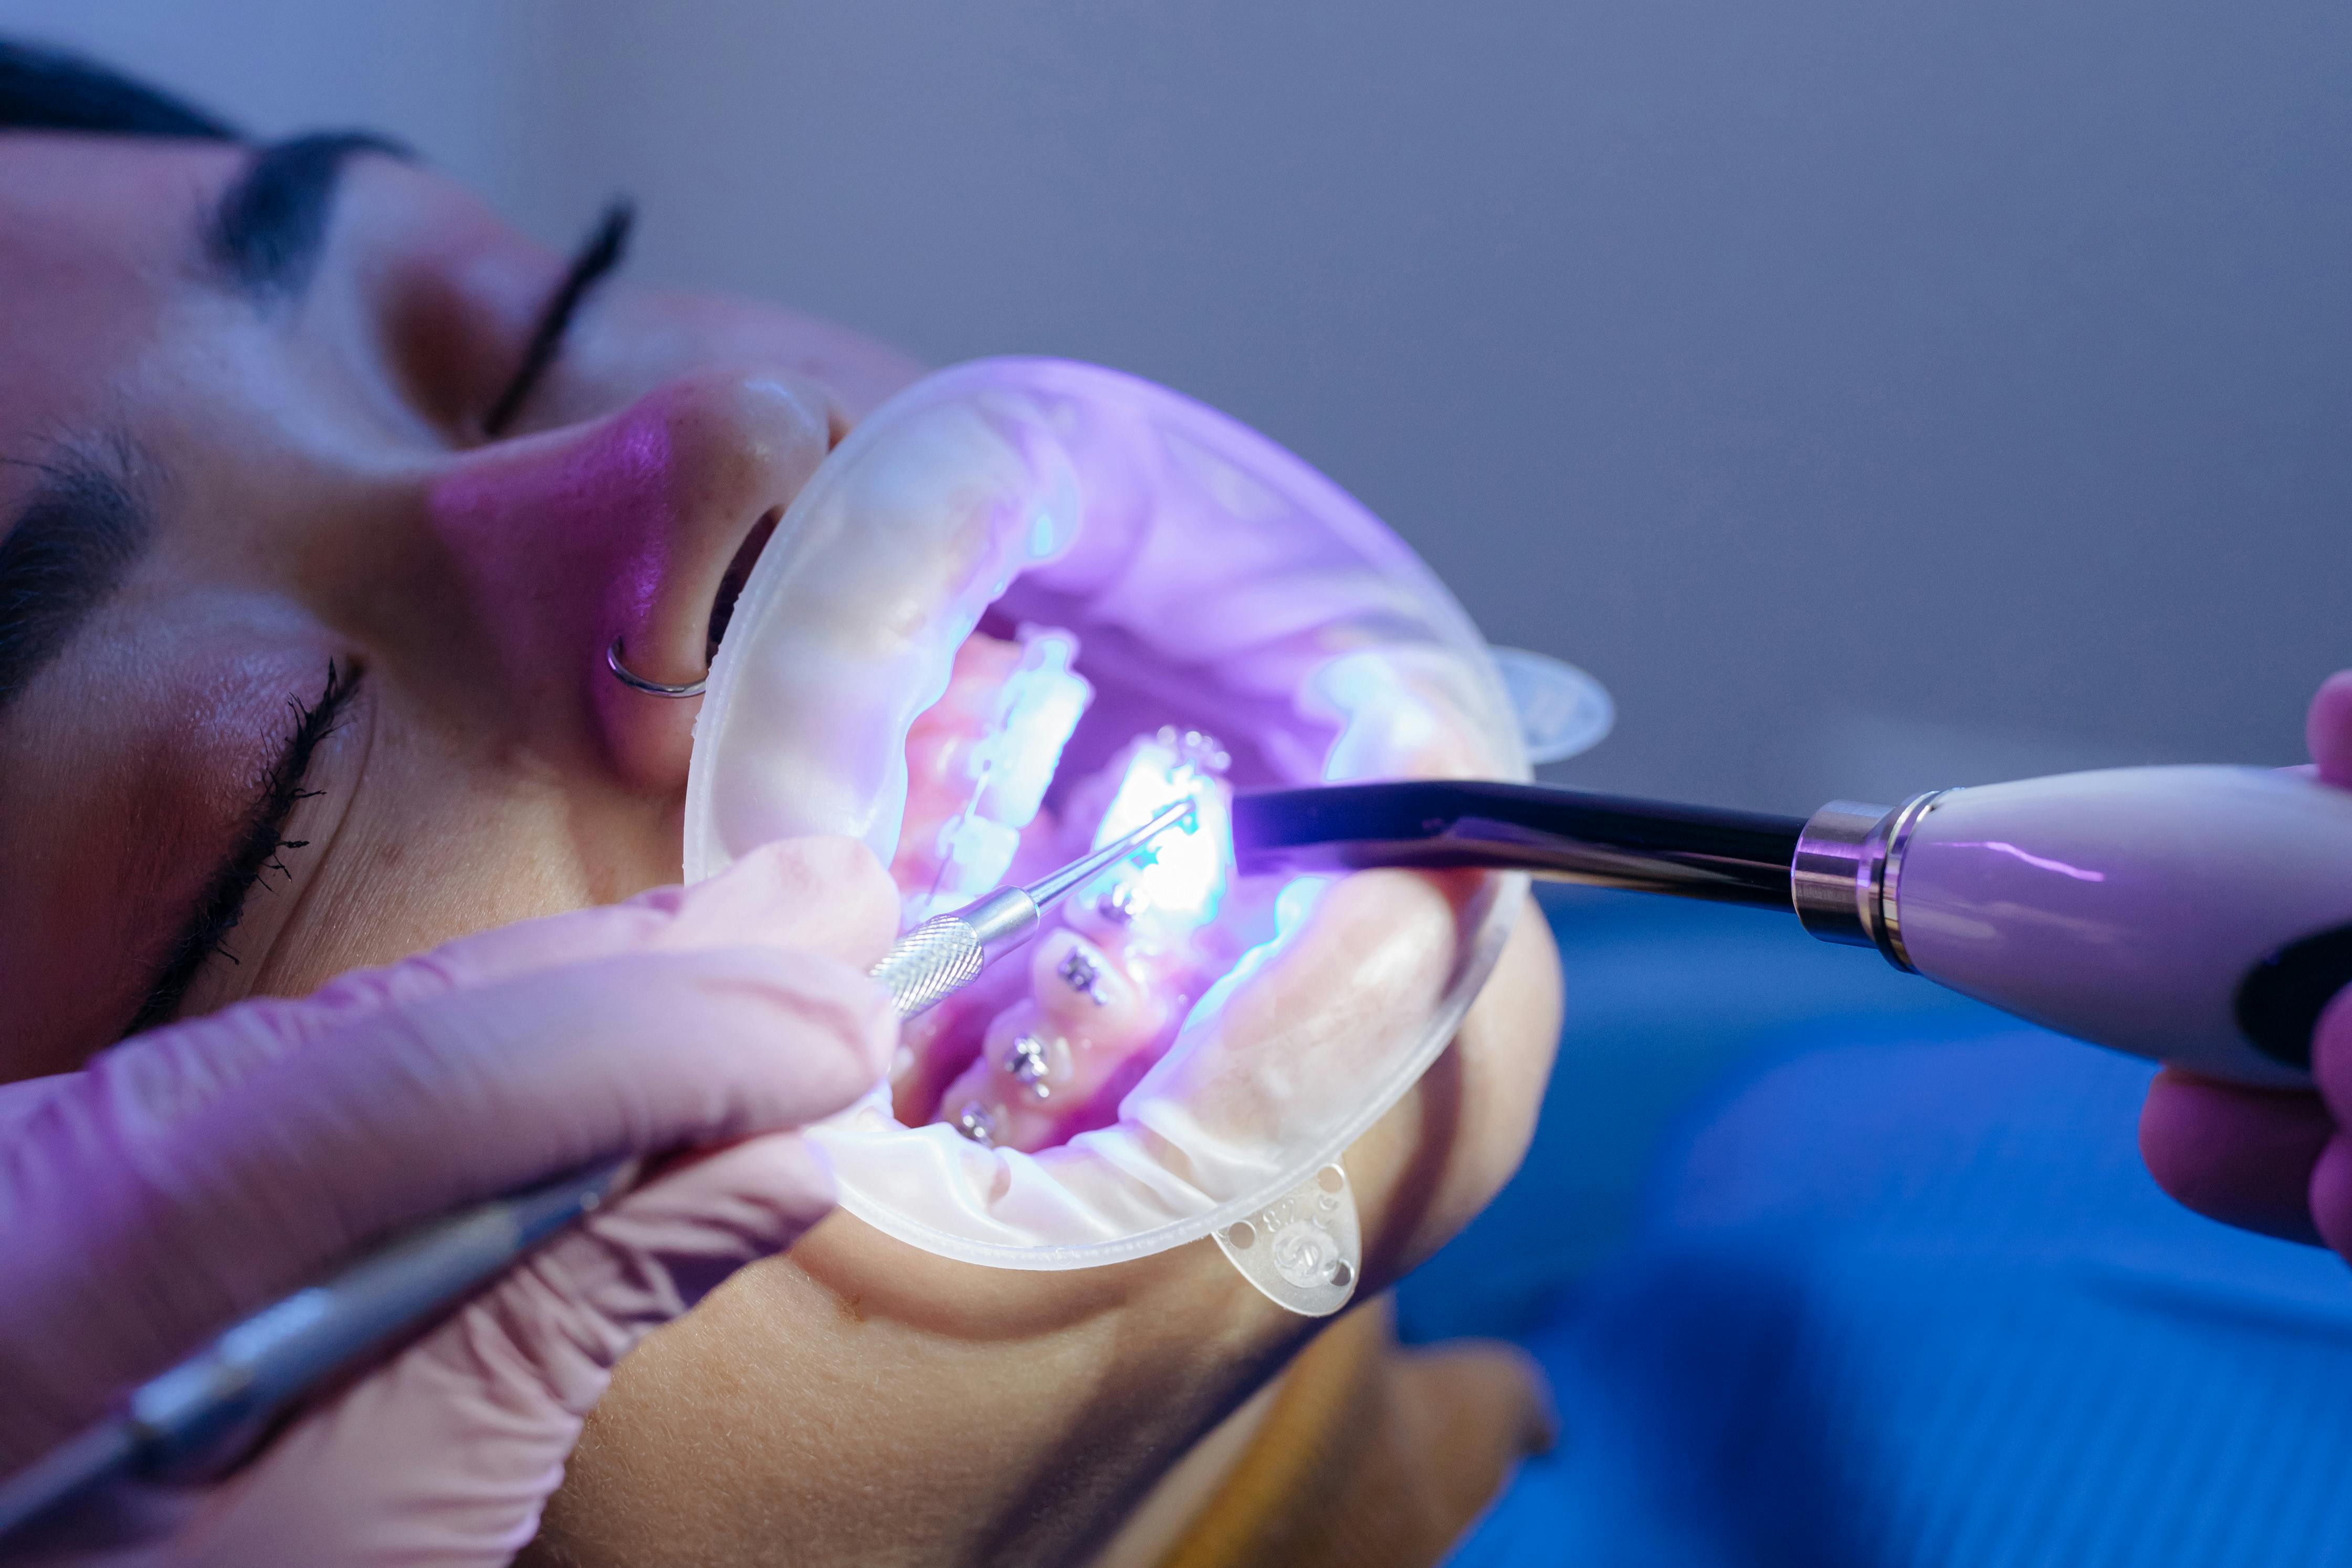 Orthodontist Applying Uv Light Cure Orthodontic Stock Footage